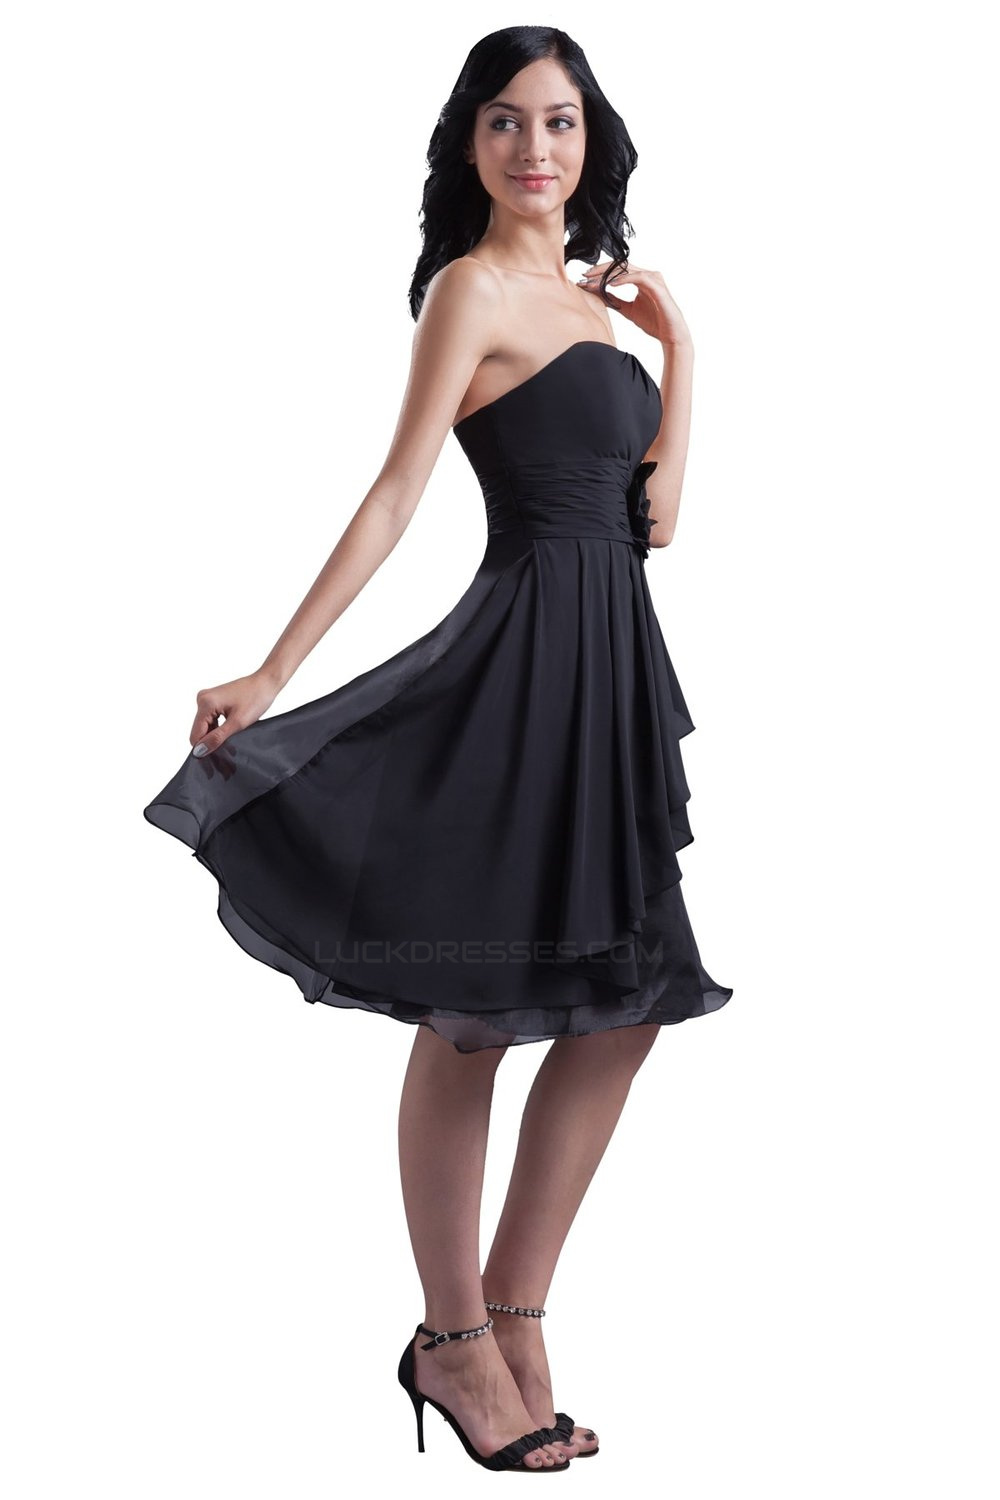 18 Short Black Dress For Wedding